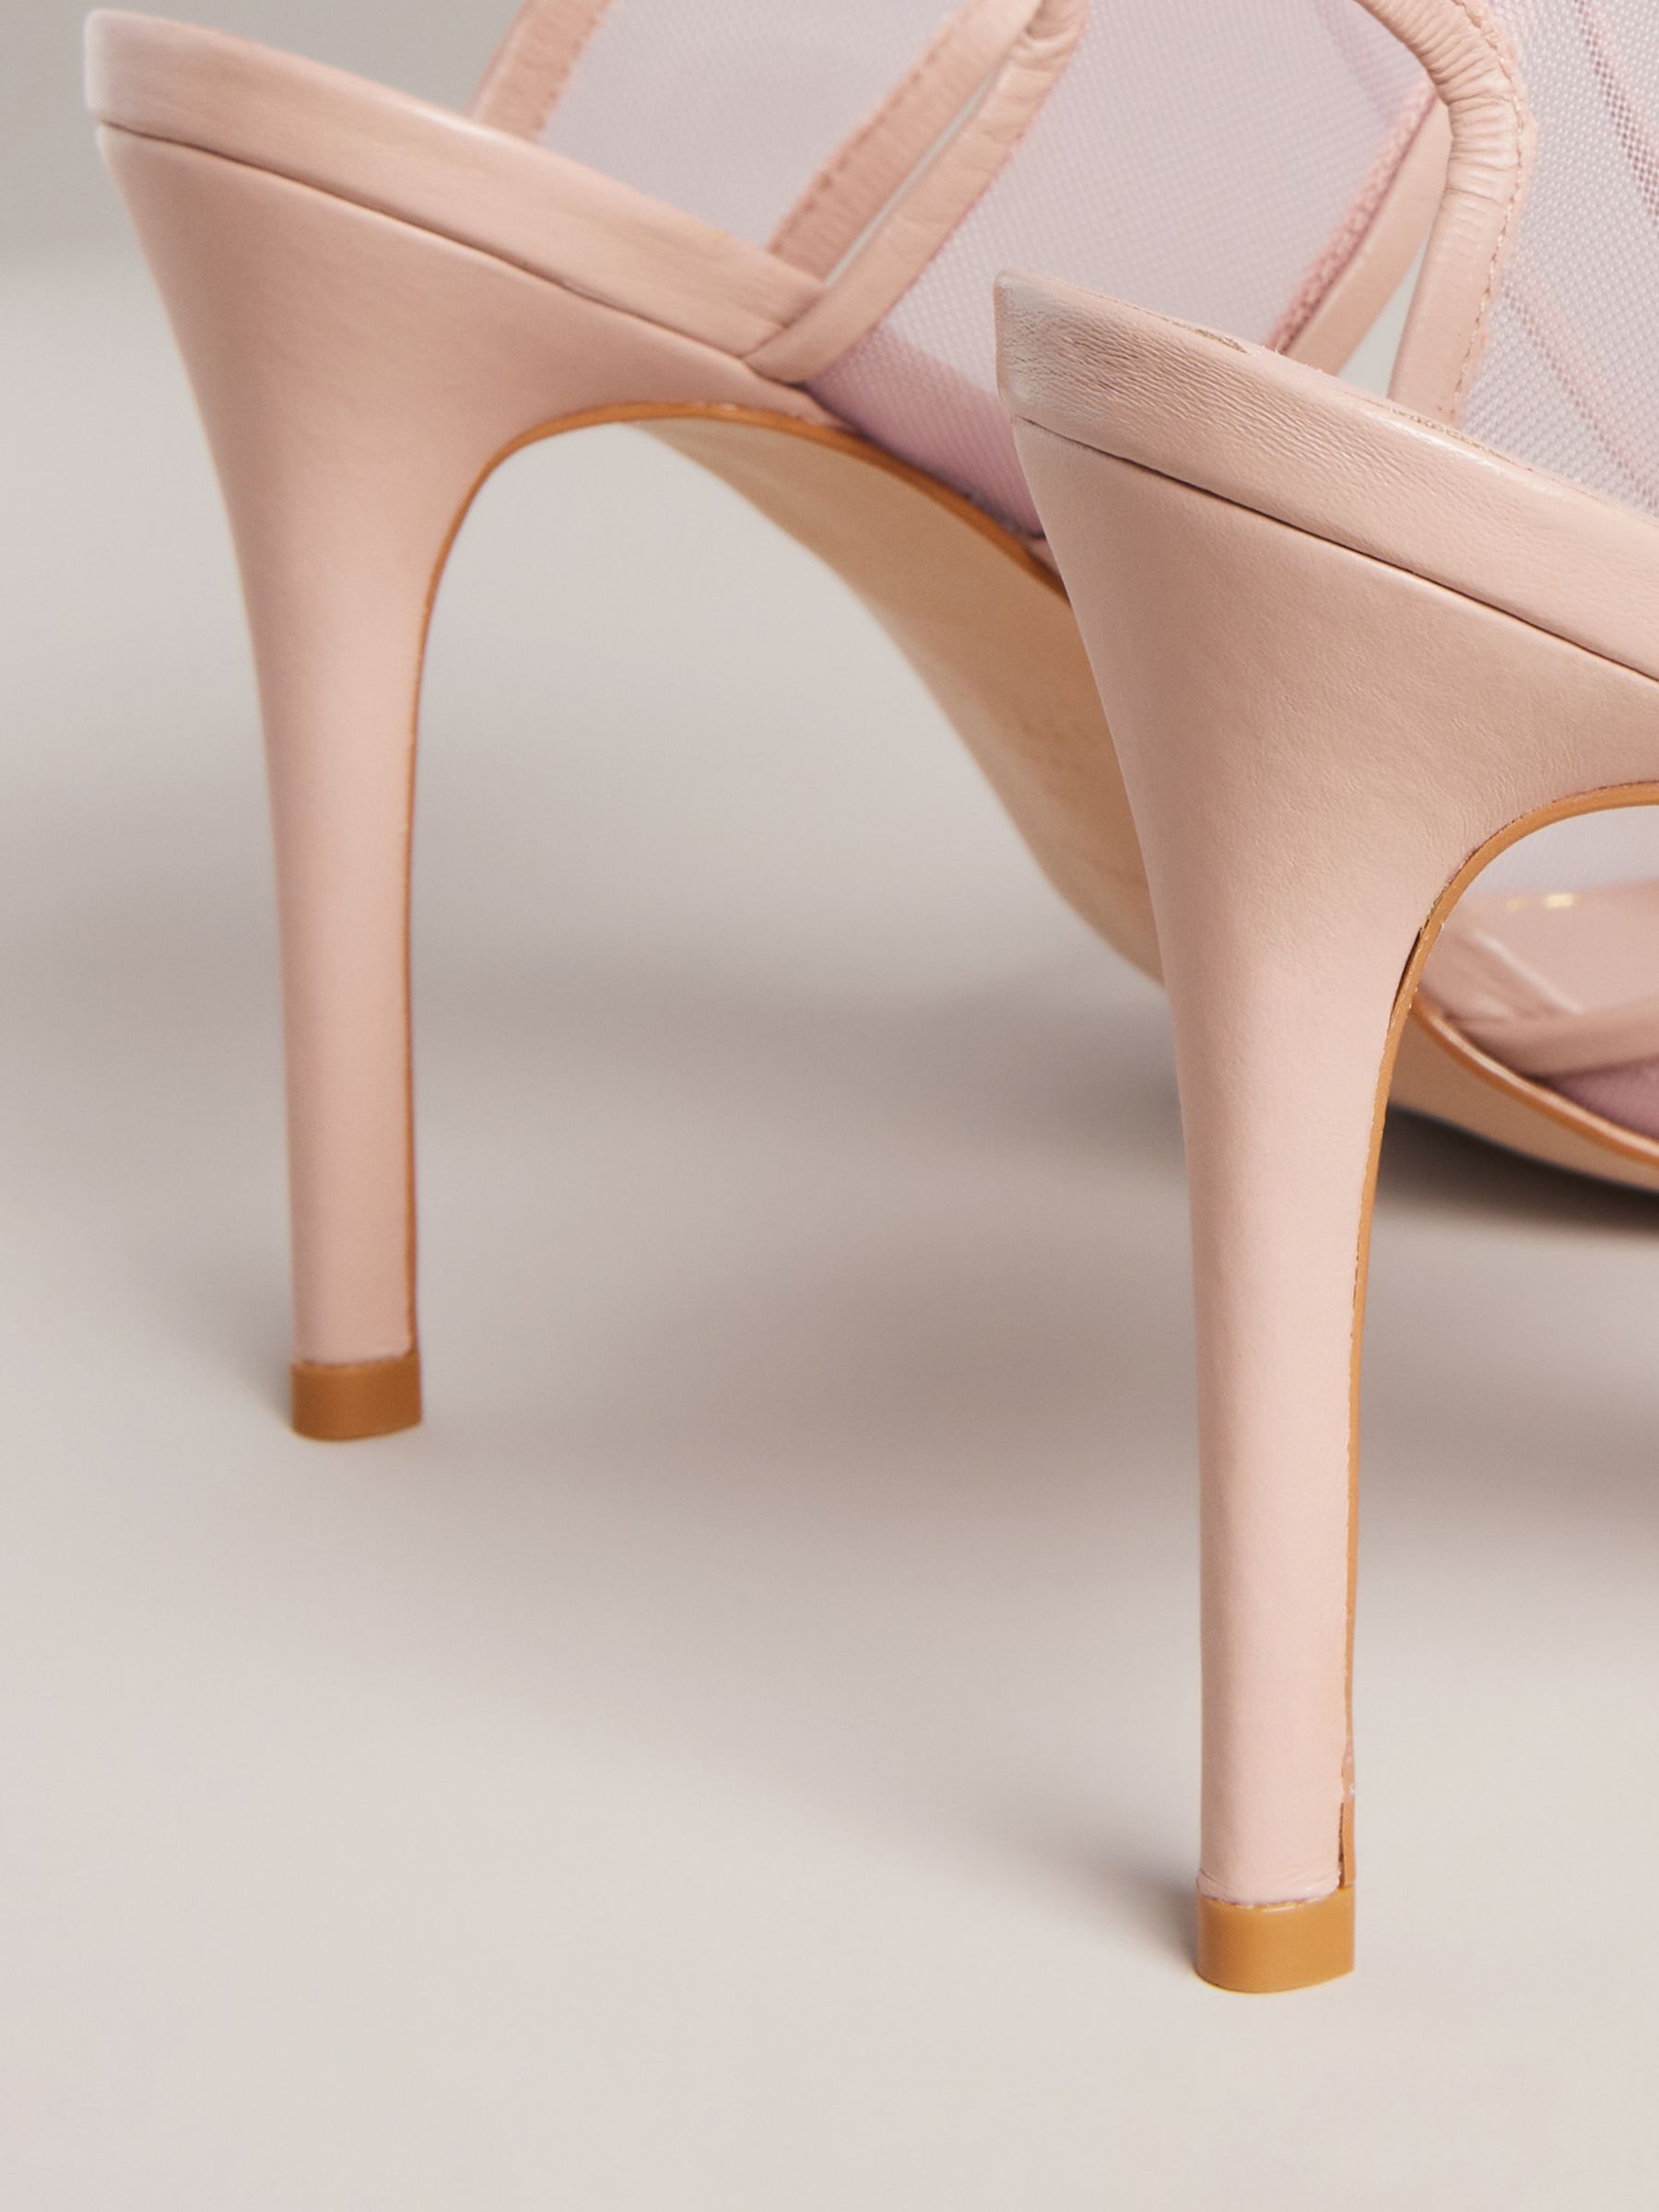 Ted Baker Junera Panel High Heel Sandals, Light Pink, 8